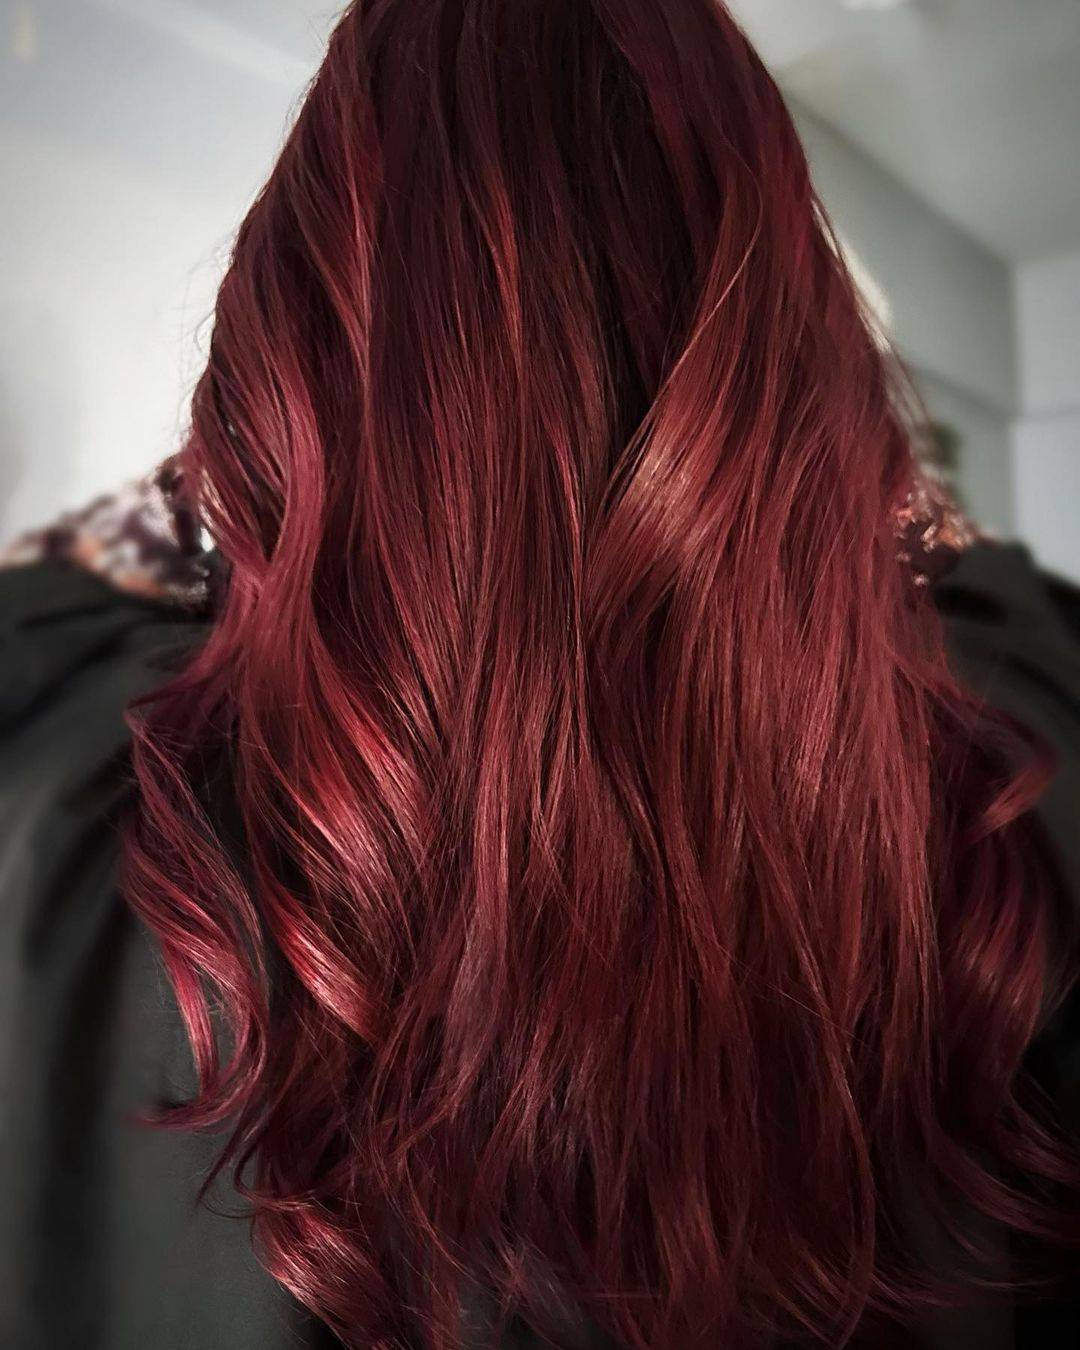 Burgundy hair color 431 burgundy hair color | burgundy hair color for women | burgundy hair color highlights Burgundy Hair Color